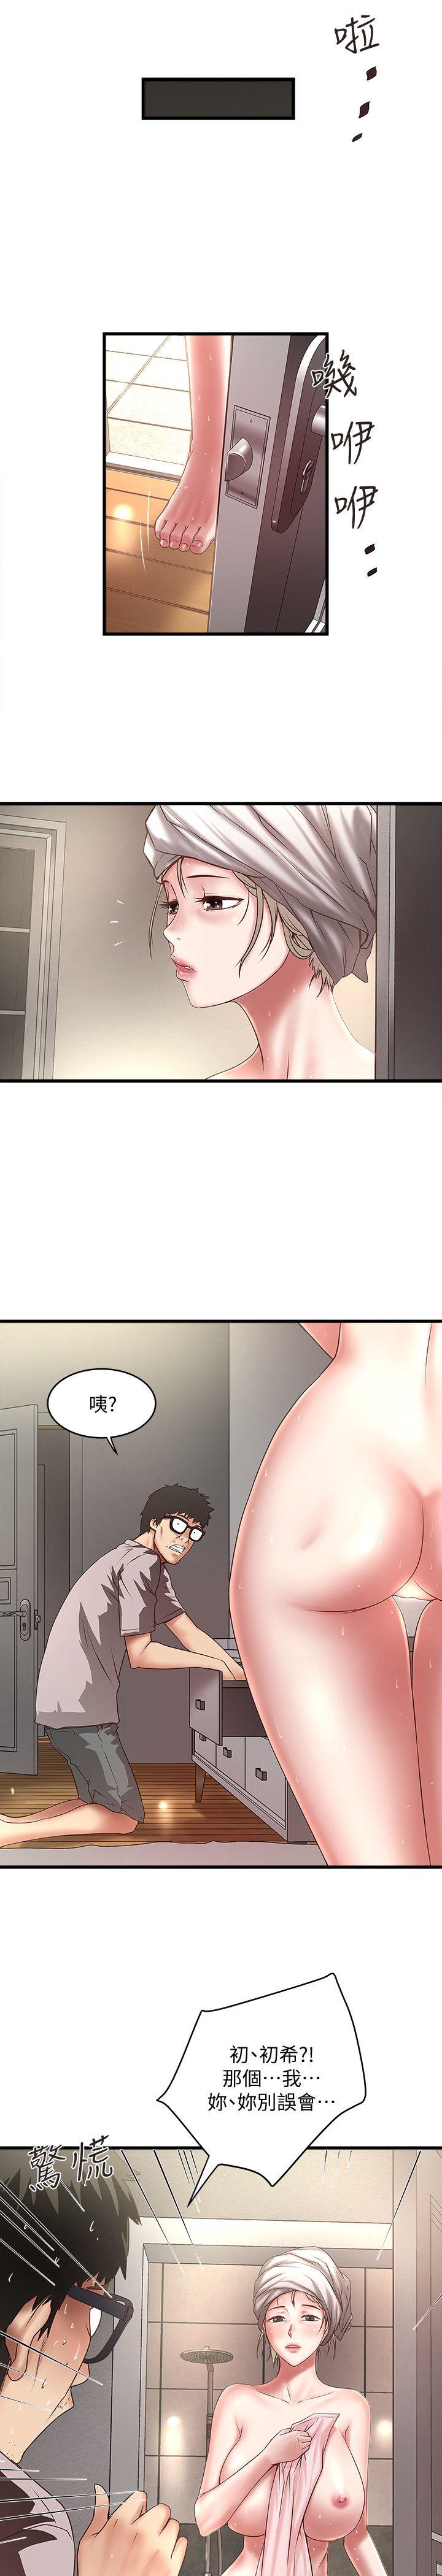 韩国污漫画 下女,初希 第21话-裸体的帮佣 18